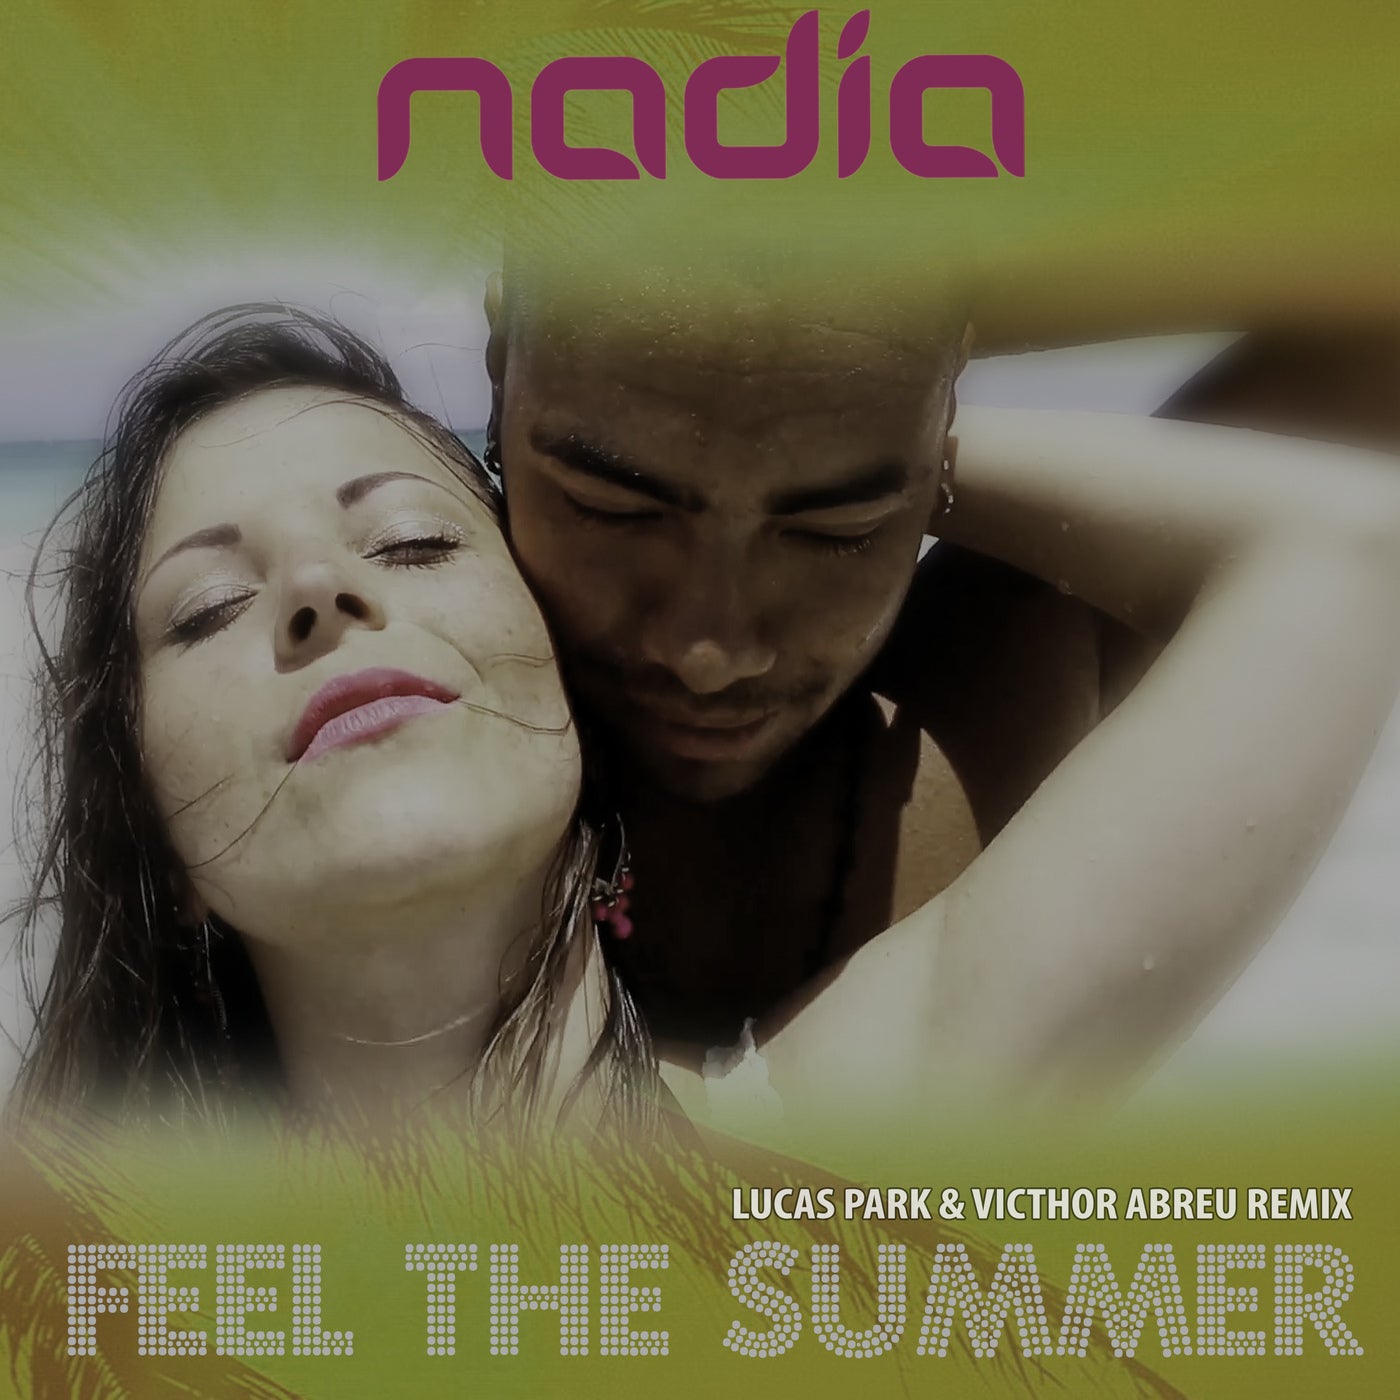 Feel the Summer - Lucas Park & Victhor Abreu Remix